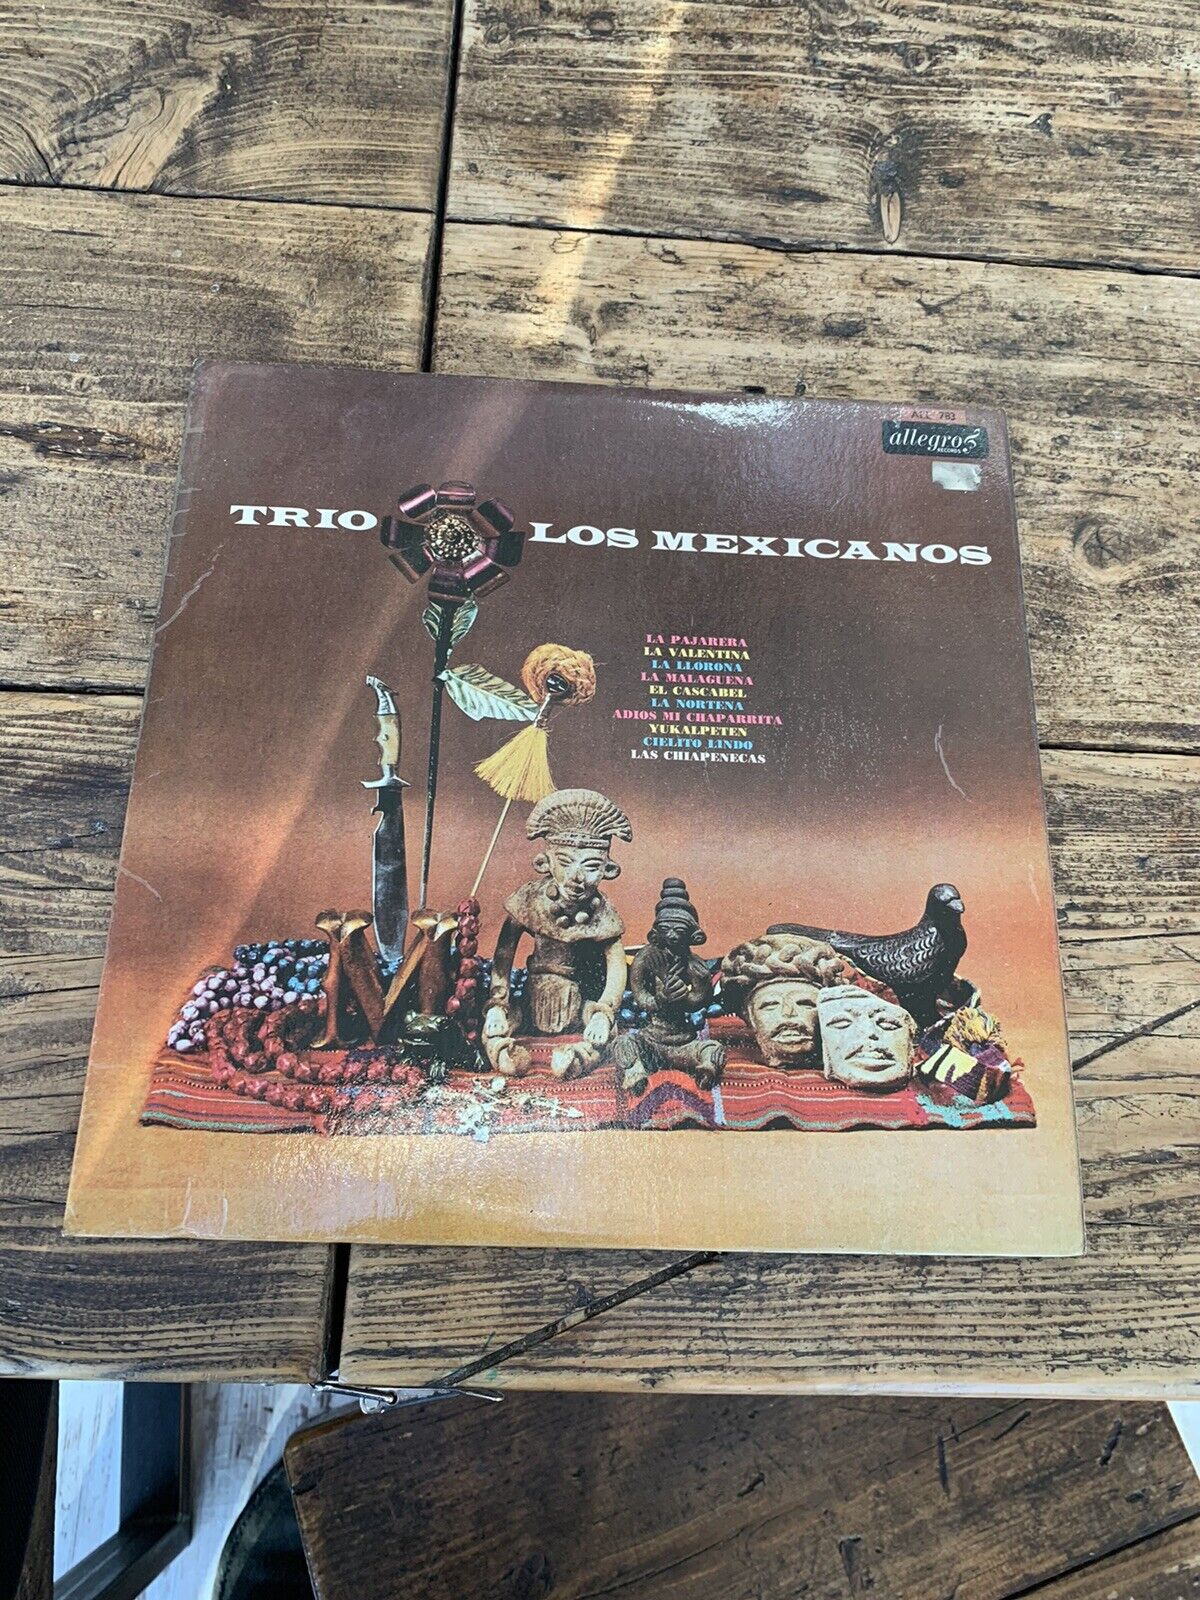 TRIO LOS MEXICANOS 1965 UK Allegro Vinyl Lp Plays Well With No Skips Comb Postag